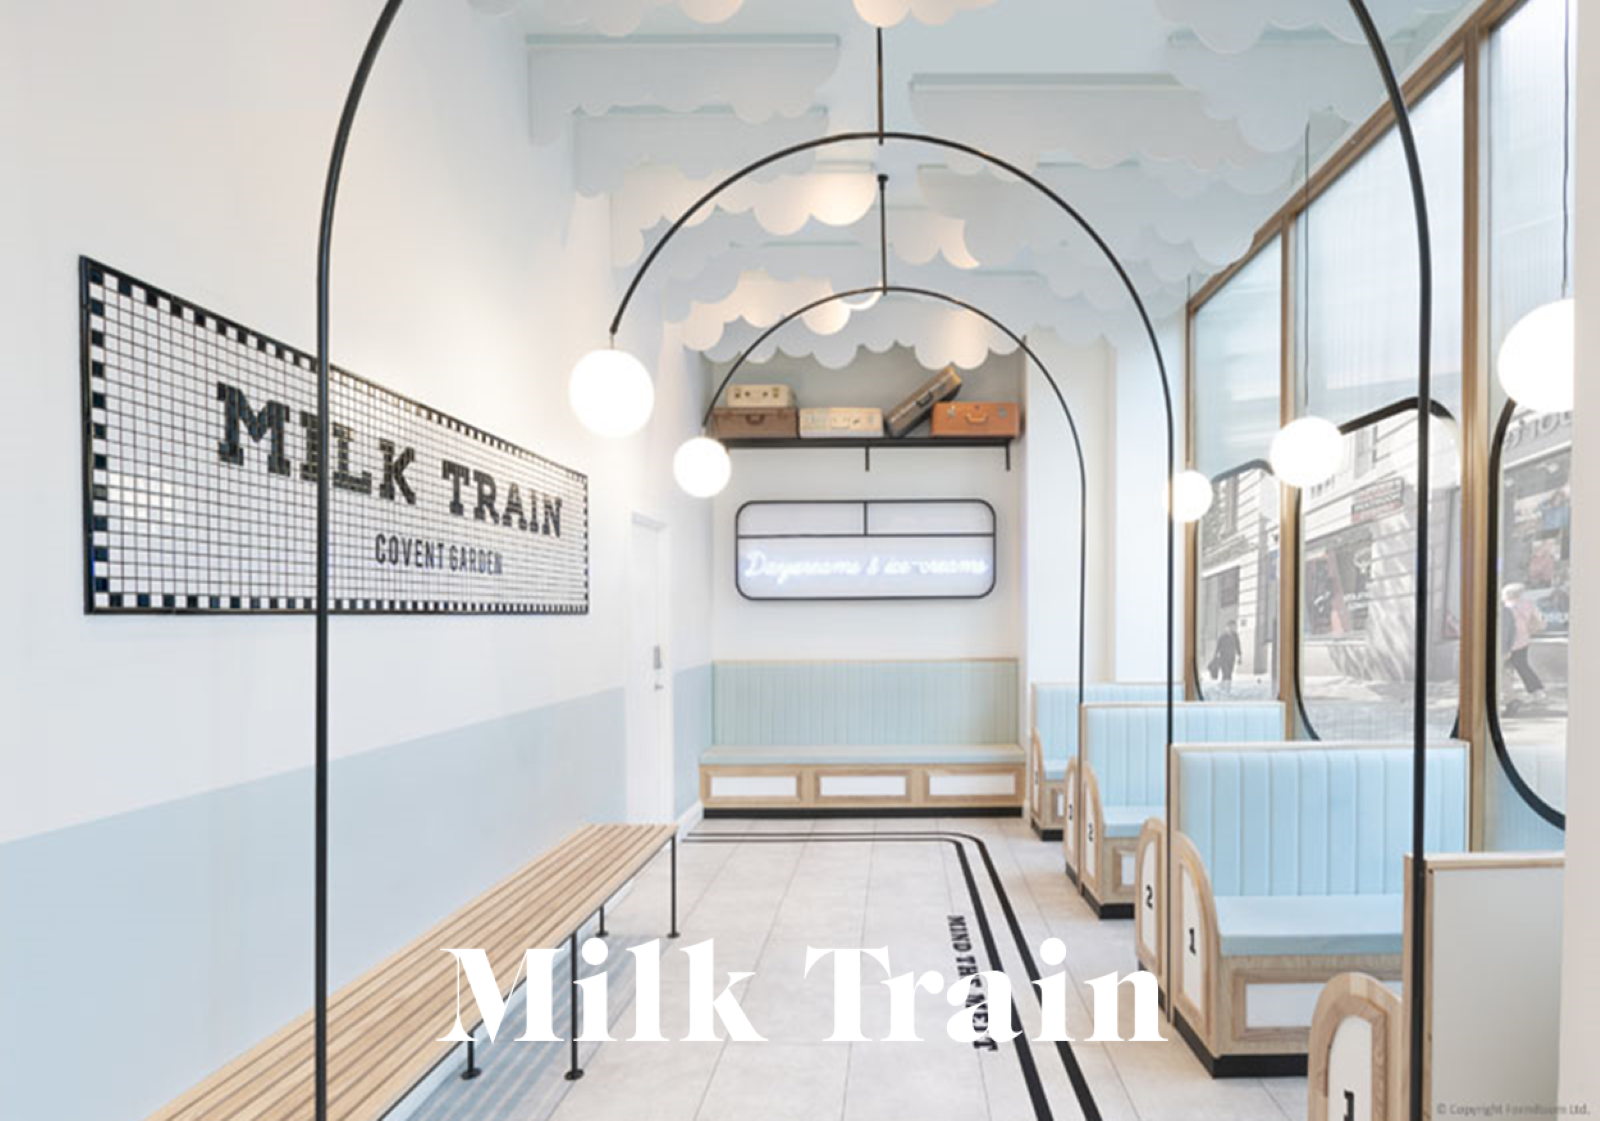 milk-train-londres-retail-design